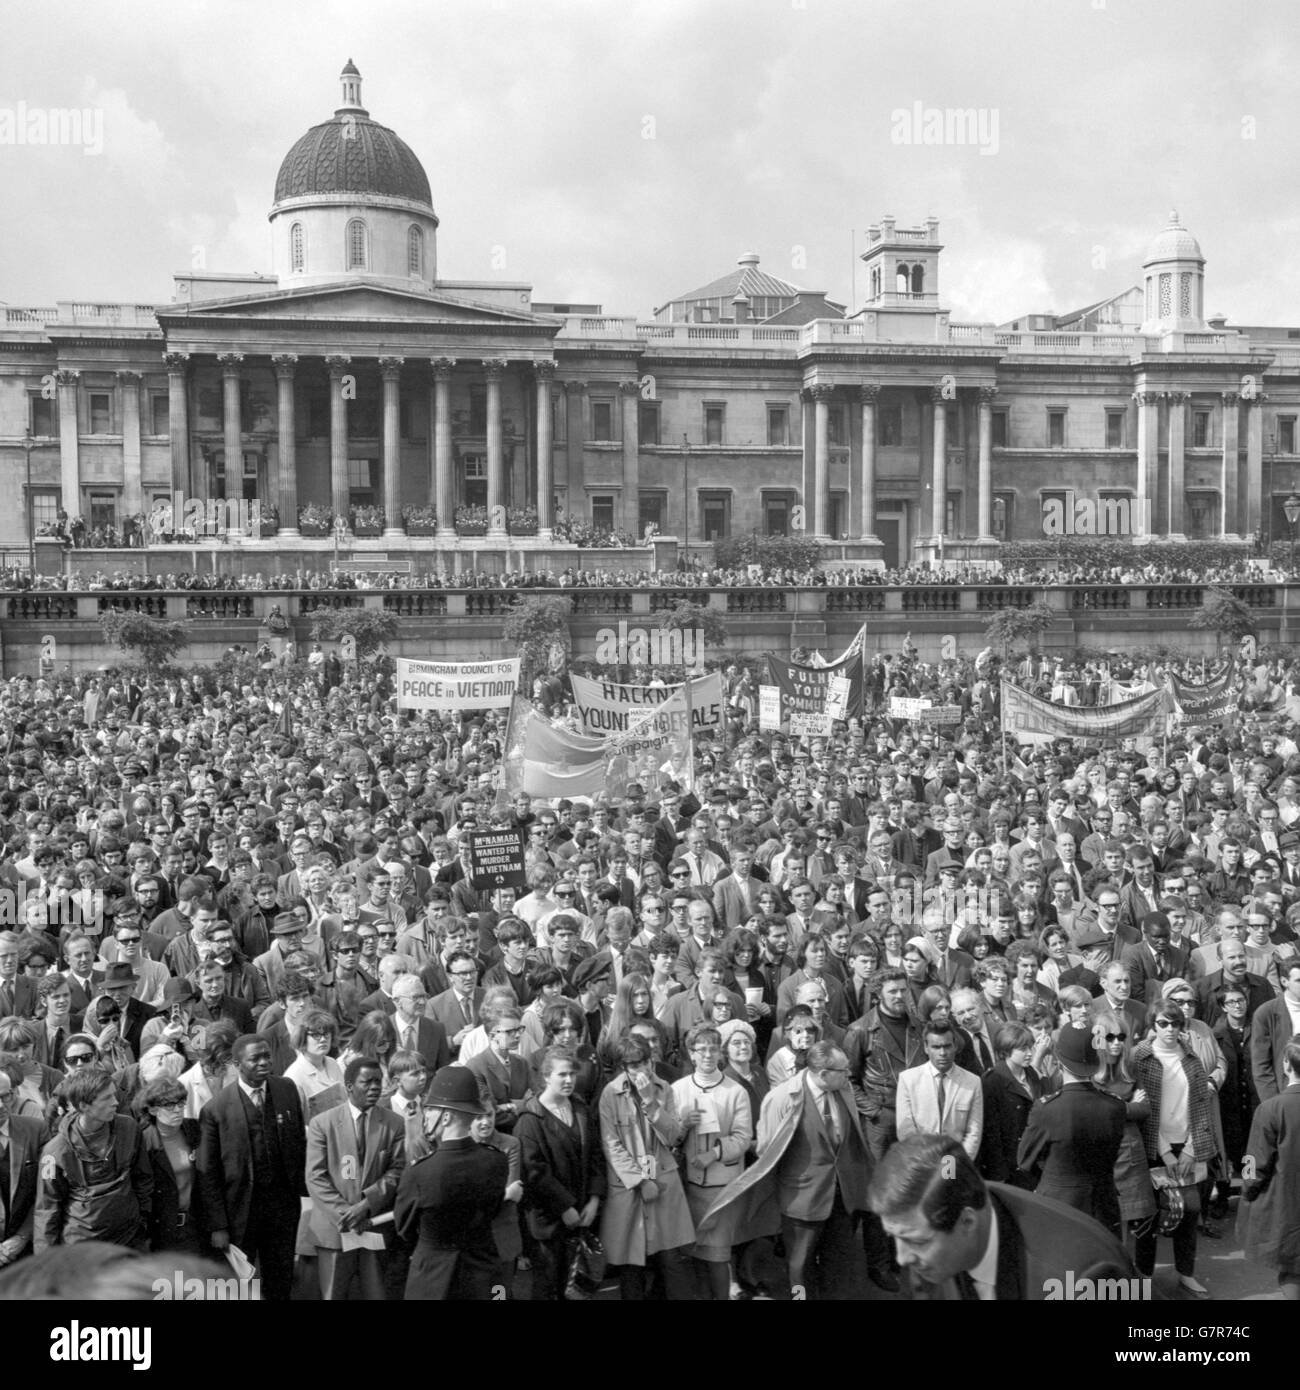 Le bandiere sono alzate nel sole di domenica a Trafalgar Square, Londra, durante l'incontro di protesta contro la guerra in Vietnam. Il rally è stato organizzato dalla Campagna per il disarmo nucleare e ha chiesto la dissociazione della Gran Bretagna dalle azioni americane in Vietnam. Foto Stock